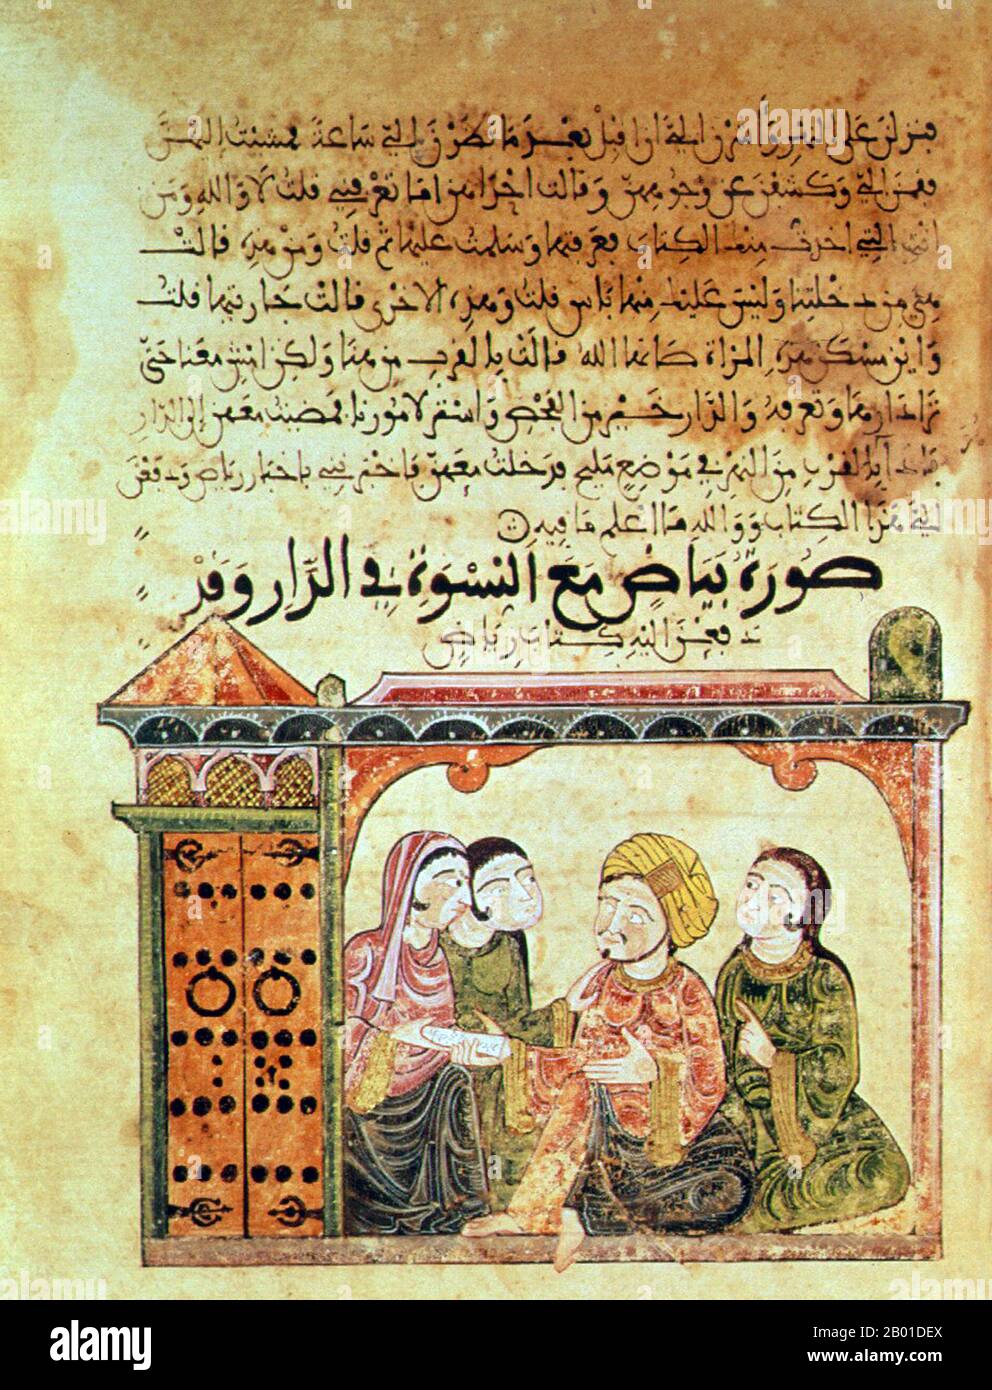 Espagne : Illustration du Tale de Bayad et Riyad, Al-Andaluz (Andalousie islamique), fin du 13th siècle. Le Hadith Bayāḍ wa Riyāḍ (l'histoire de Bayad et Riyad) ou Qissat Bayad wa Riyad est une histoire d'amour arabe de 13th ans. Les personnages principaux de l'histoire sont Bayad, fils d'un marchand et étranger de Damas, et Riyad, une fille bien éduquée dans la cour d'un Hajib (vizier ou ministre) sans nom d'Irak et une 'Dame' (al-sayyida). On croit que le manuscrit de Hadith Bayad wa Riyad est le seul manuscrit illustré connu pour avoir survécu à plus de 8 siècles de présence musulmane en Espagne. Banque D'Images